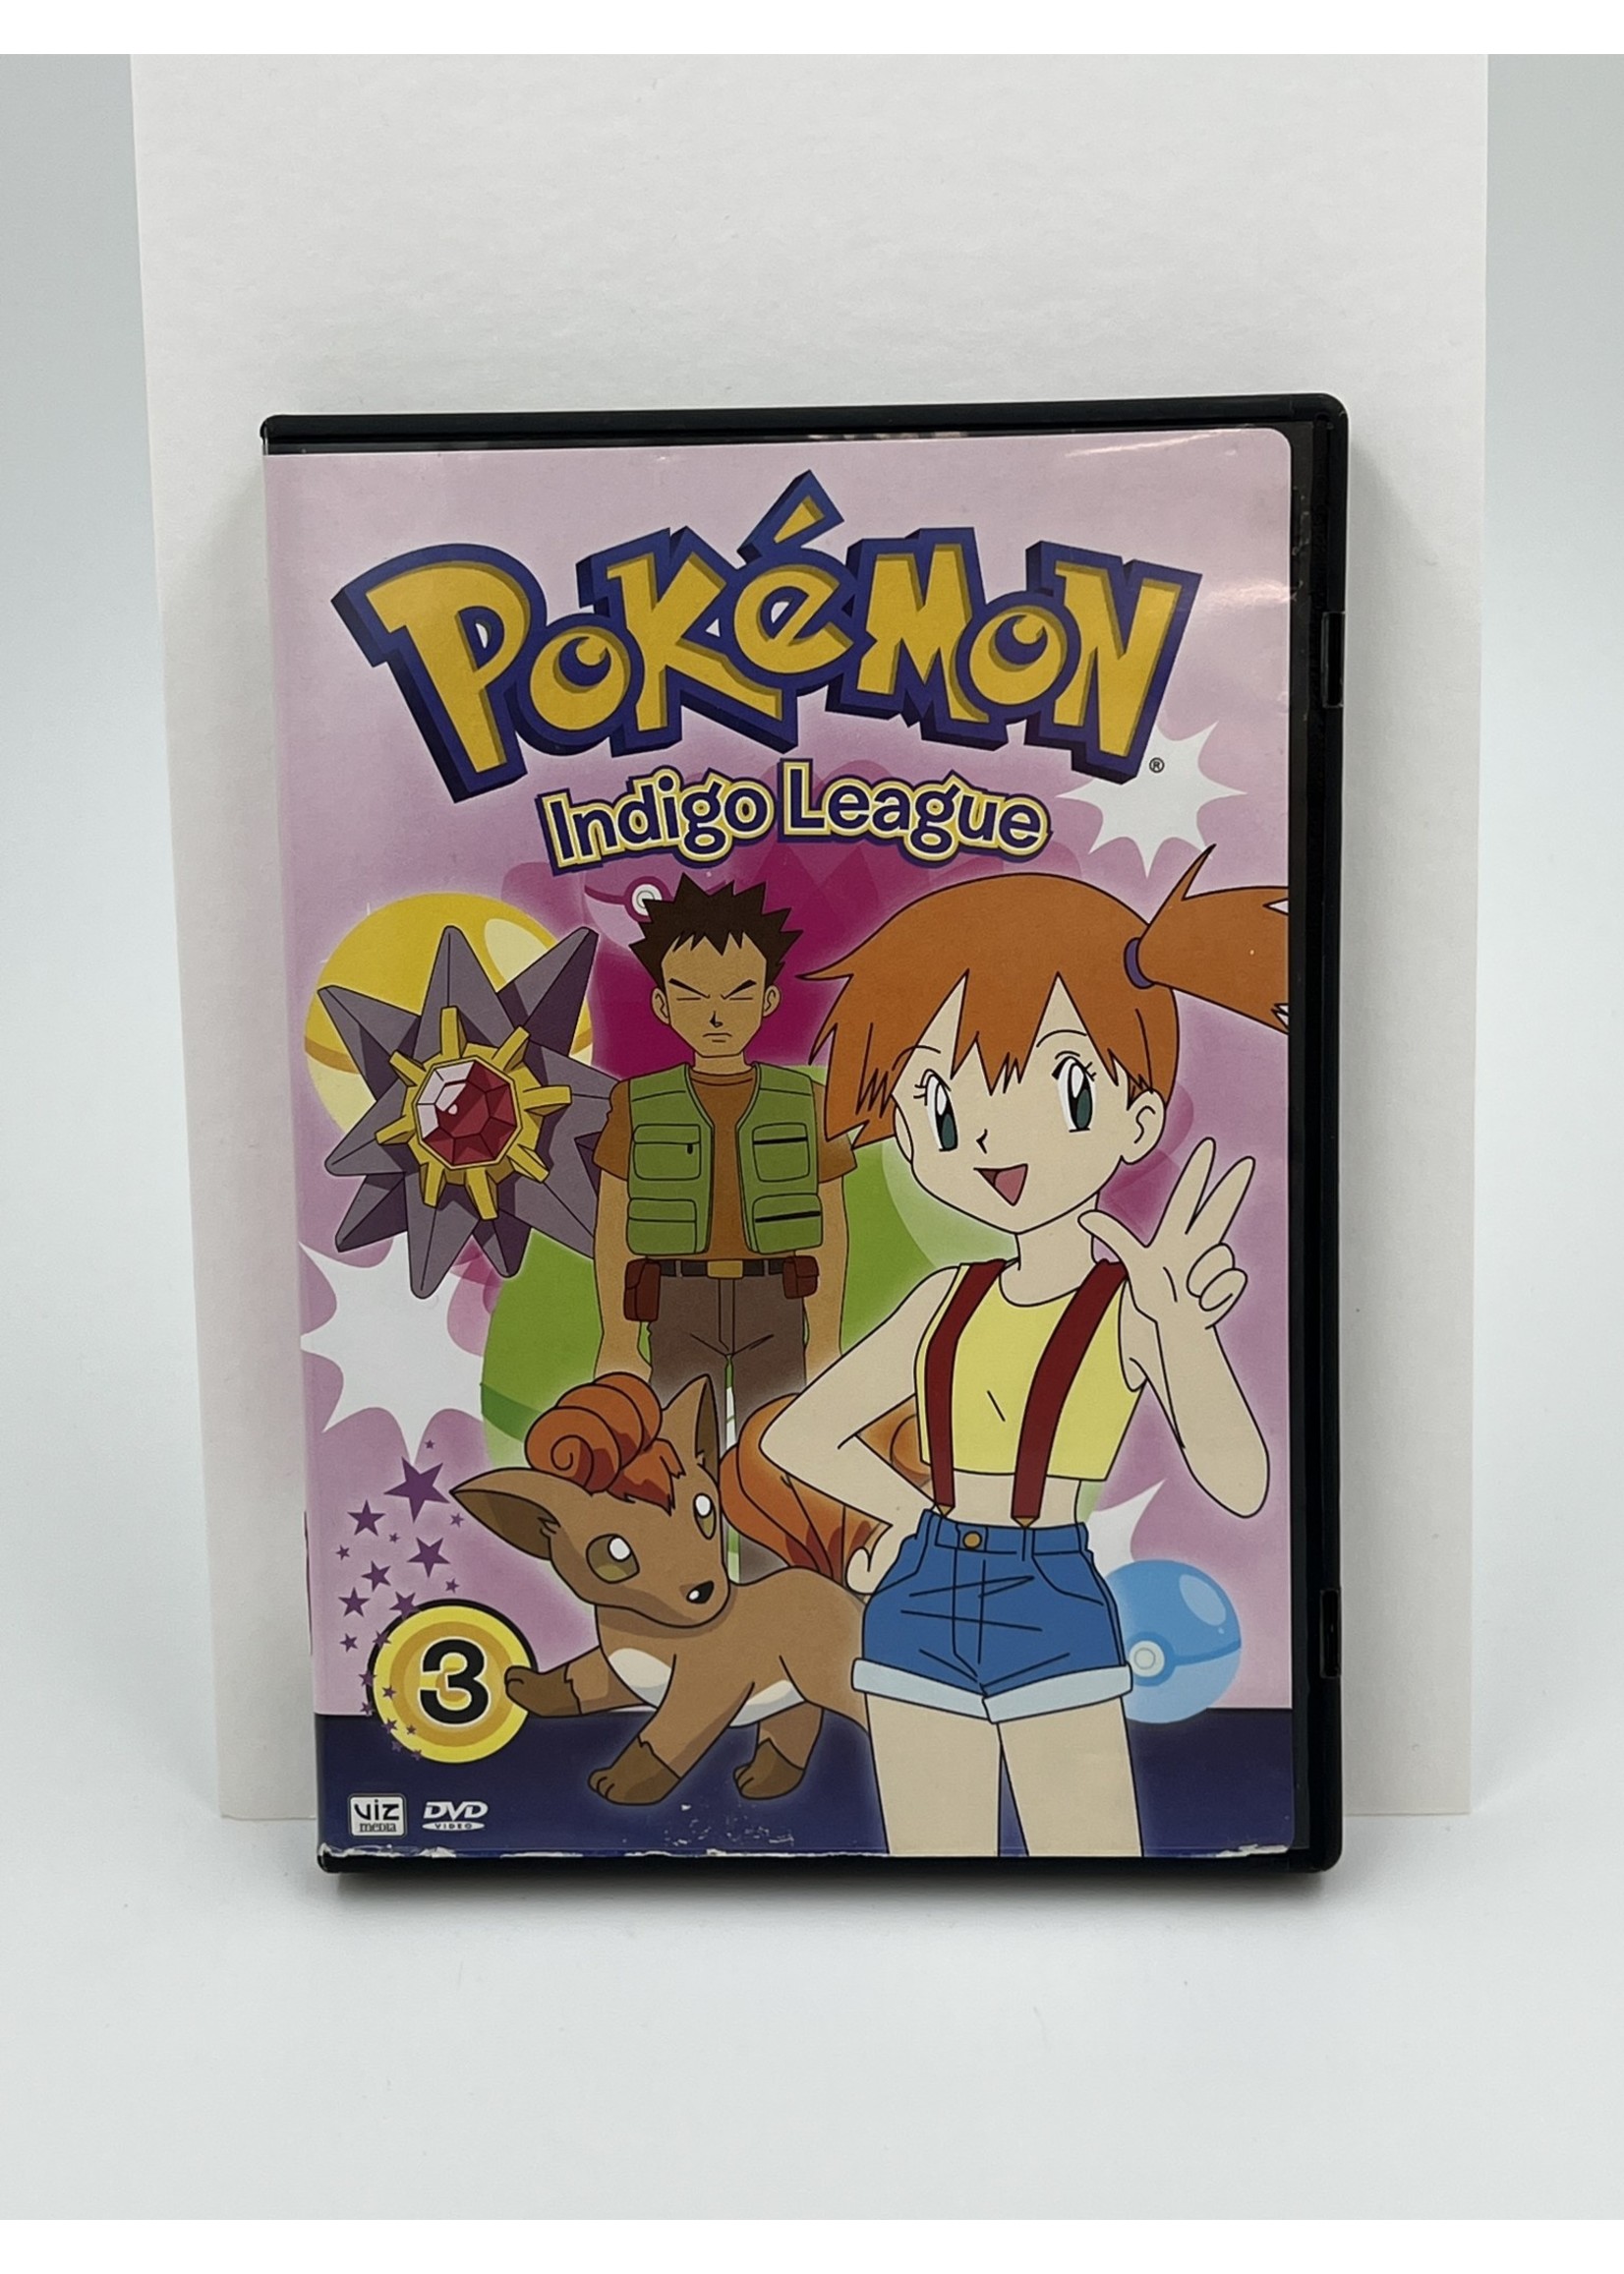 Pokemon Pokemon Indigo League Disc 2 and 3 DVD